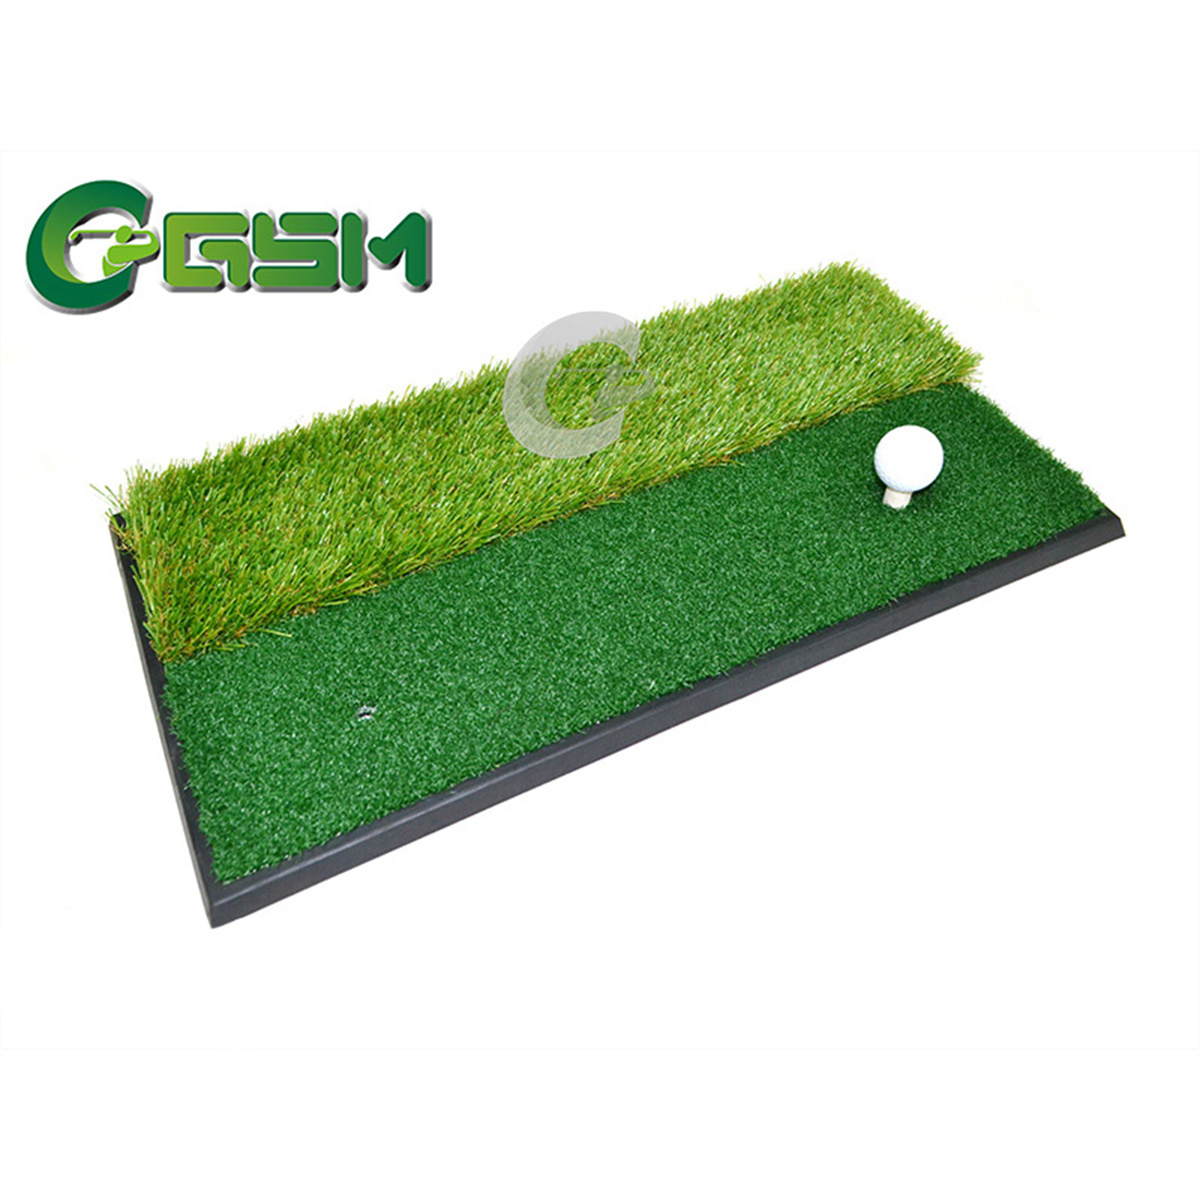 Podloga za golf s visokokvalitetnom i izdržljivom travom A60S